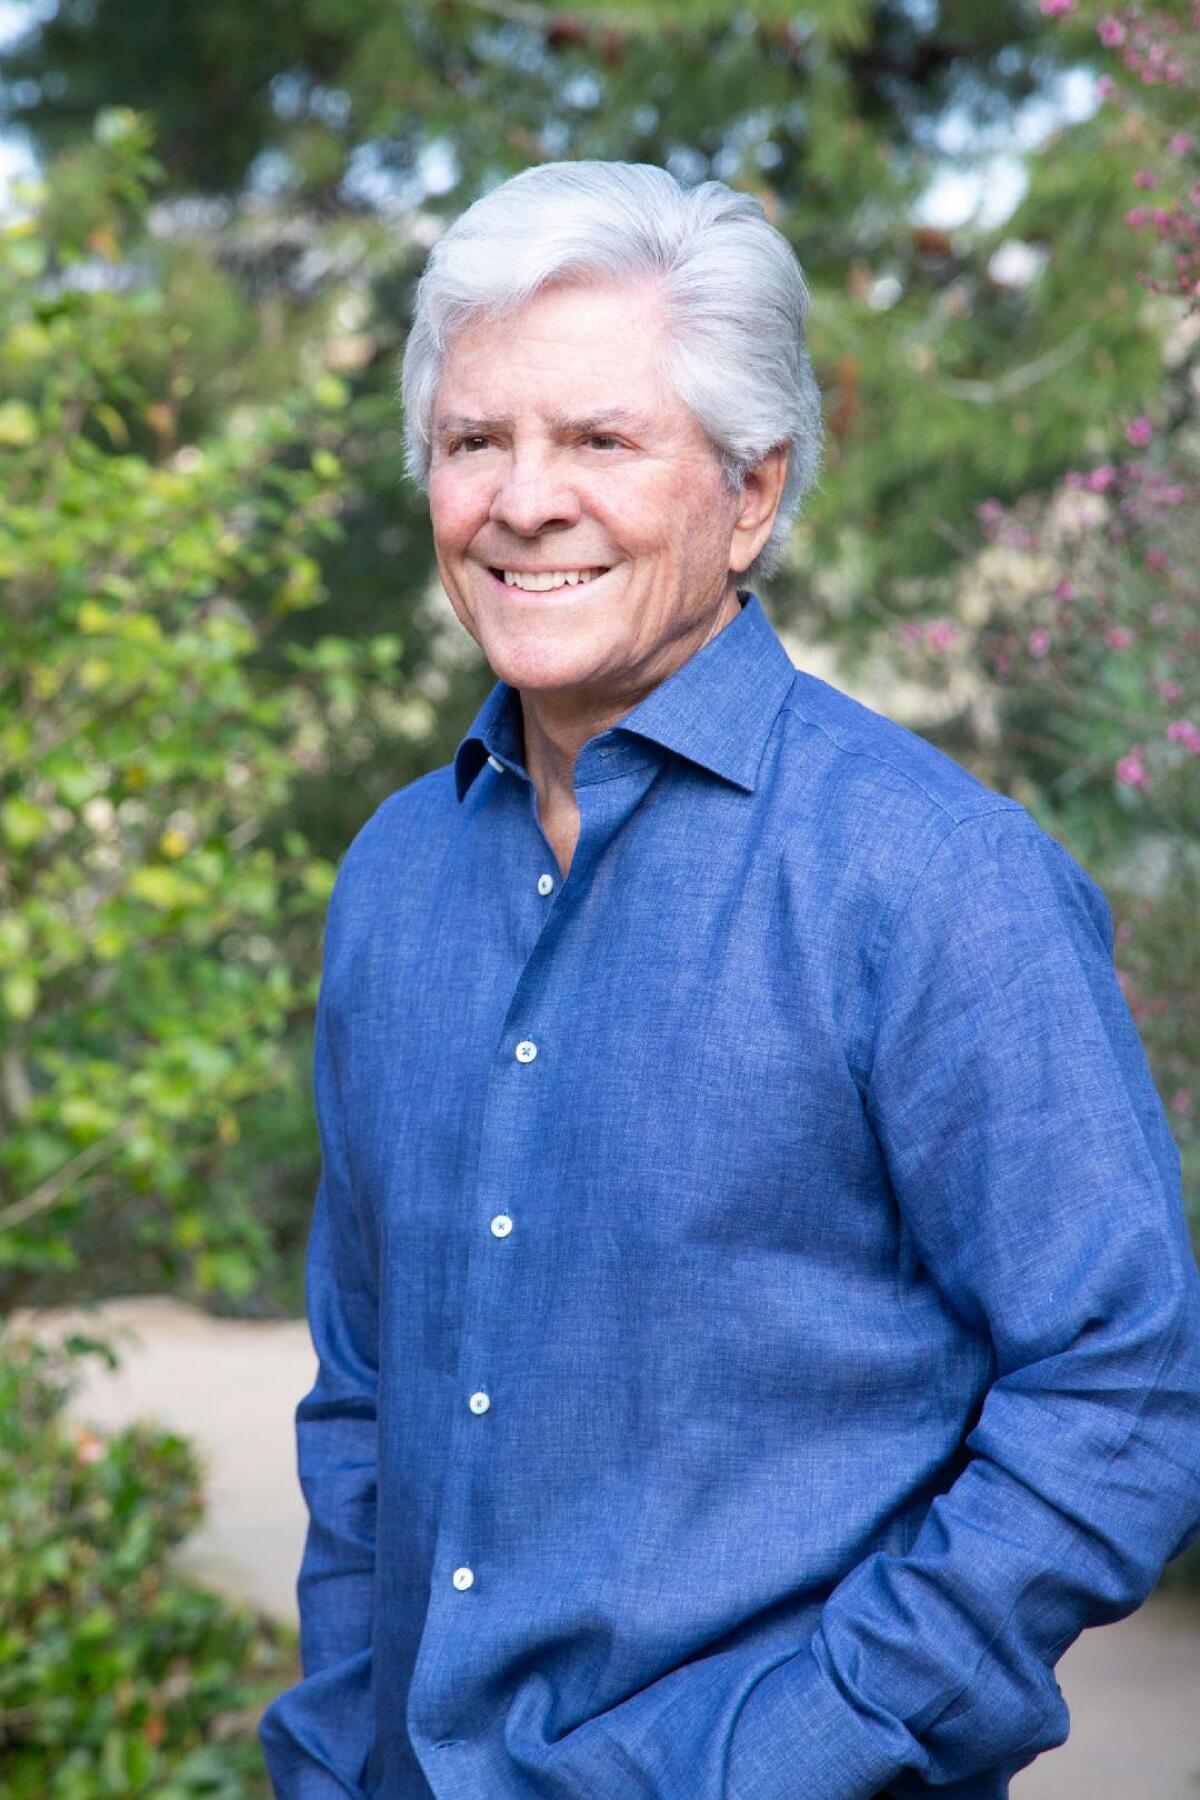 Author Paul D. Olsen